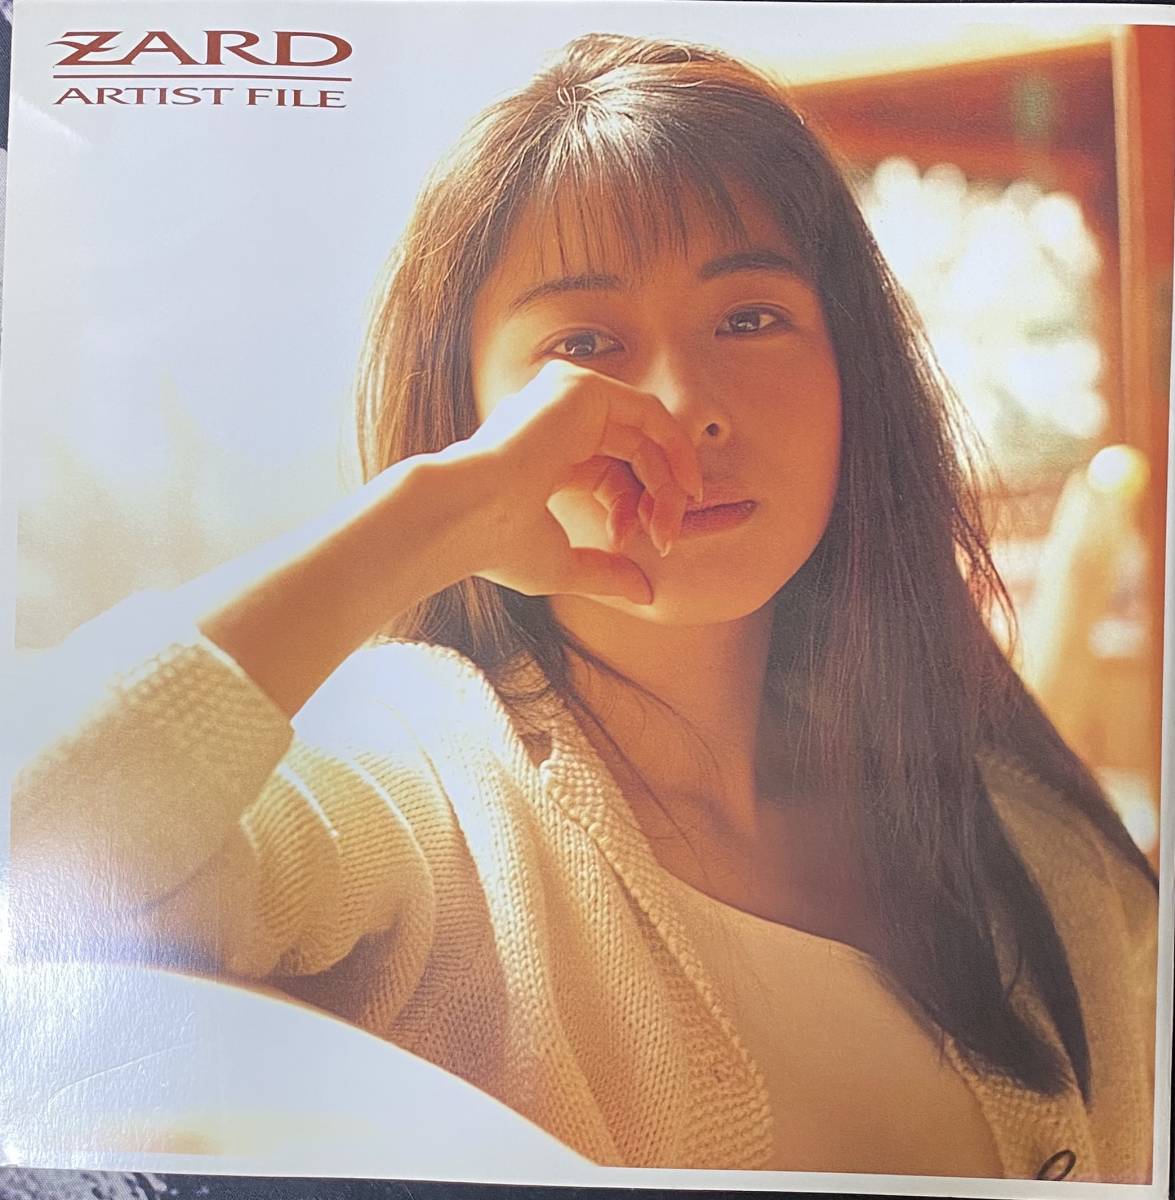 Objet de collection ZARD ARTIST FILE Izumi Sakai Pamphlet Pas à vendre, album photo, Musicien, ZARD